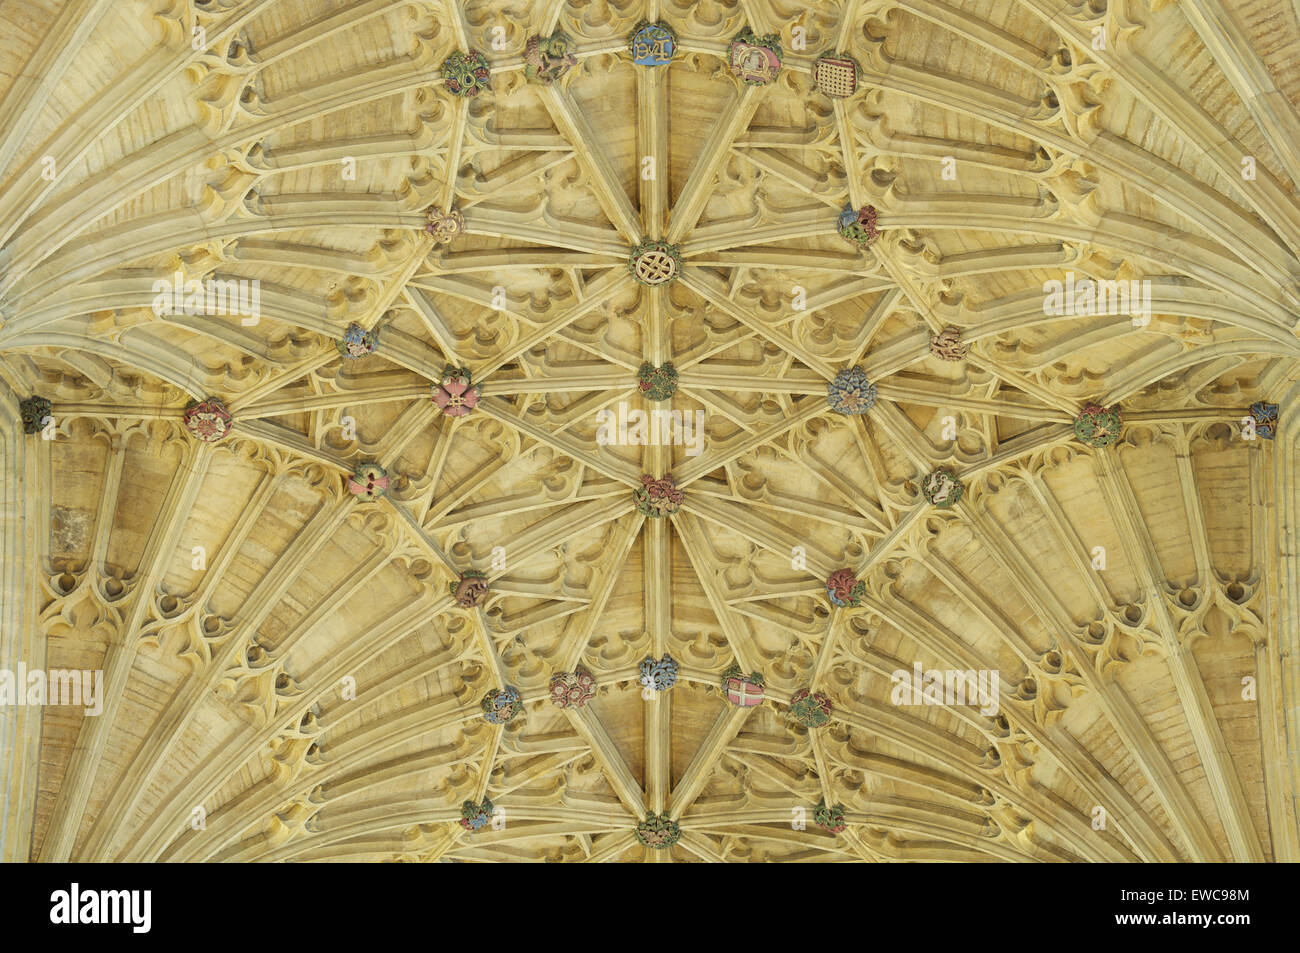 Il magnifico gotico medievale ventilatore soffitto a volte di Sherborne Abbey con la sua colorata borchie ornamentali. Il Dorset, Inghilterra, Regno Unito. Foto Stock